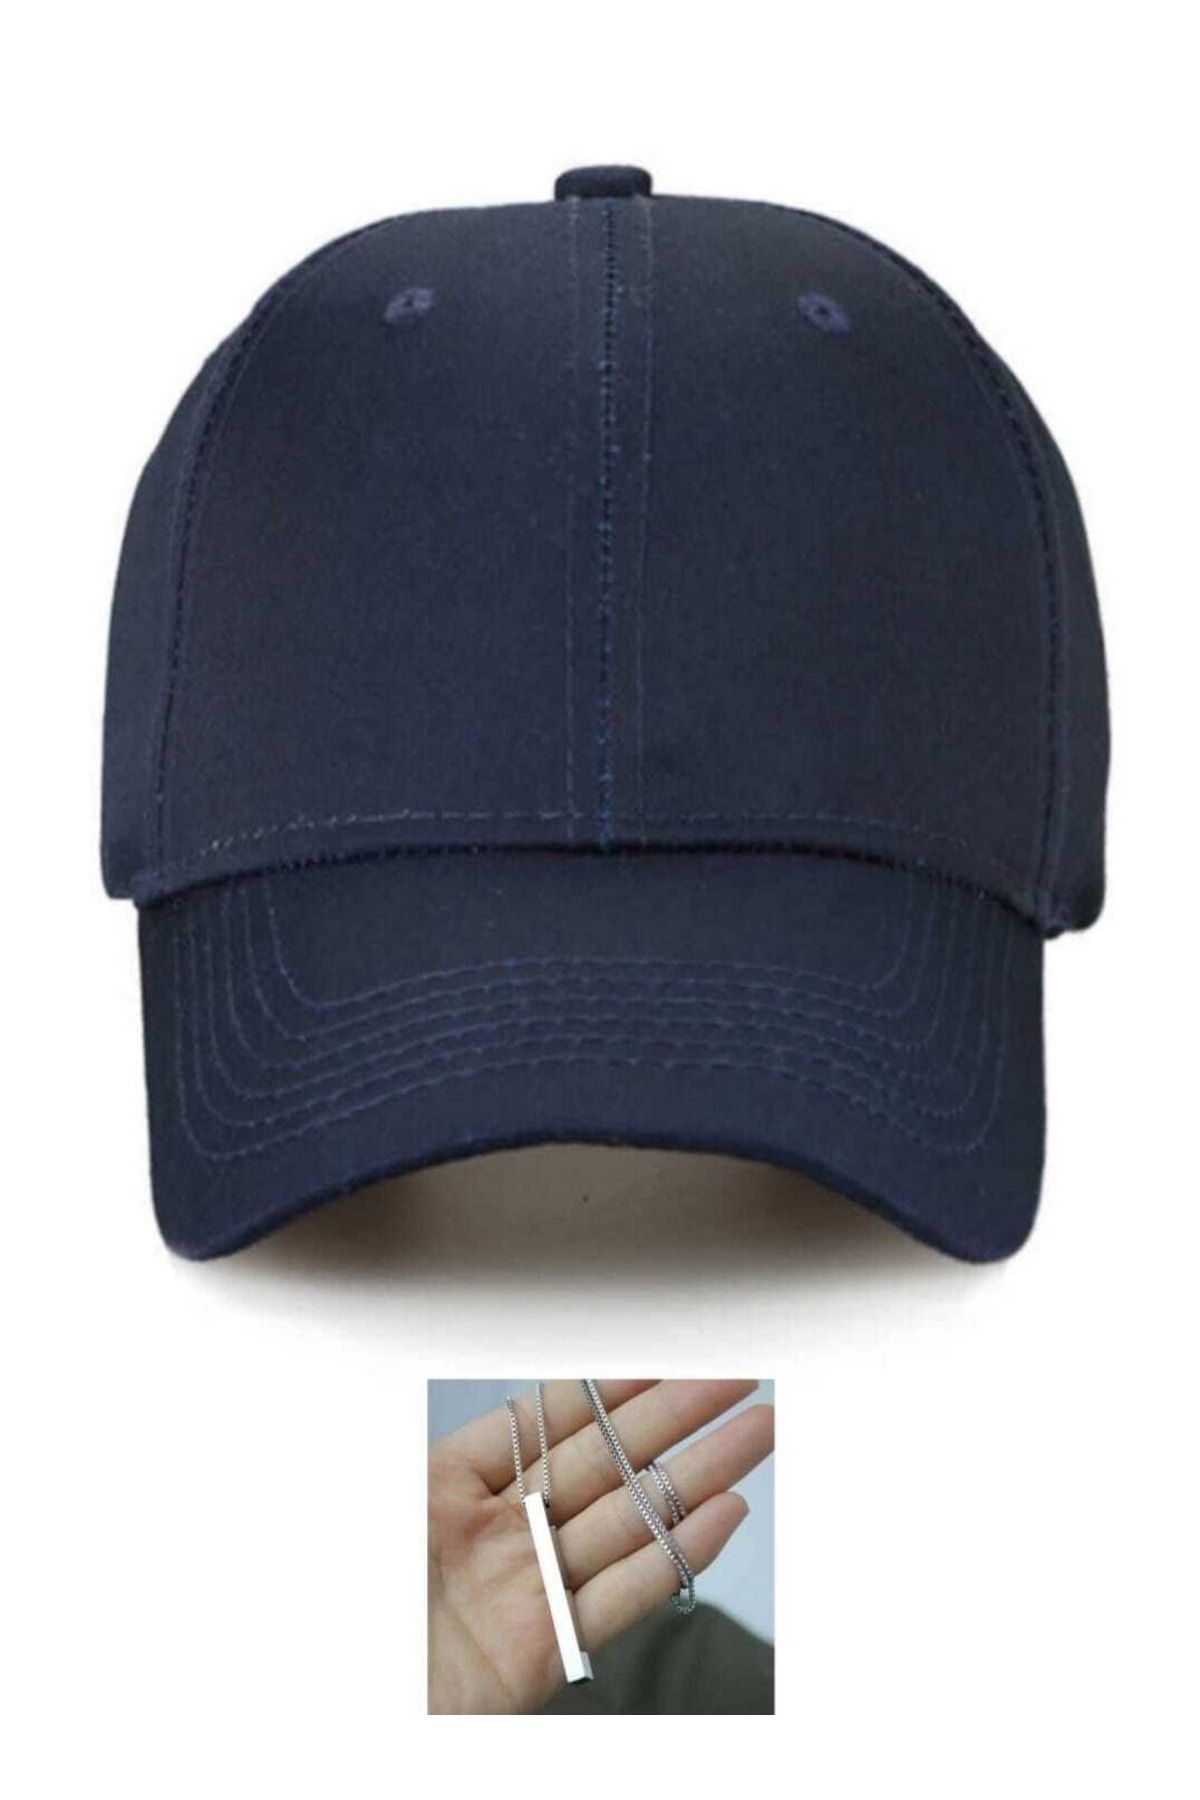 Genel Markalar Yazlık Beyzbol Düz Ve Çeşitli Renklerde Şapka ,kep Yazlık Kep Beyzbol Düz Kolye Emka